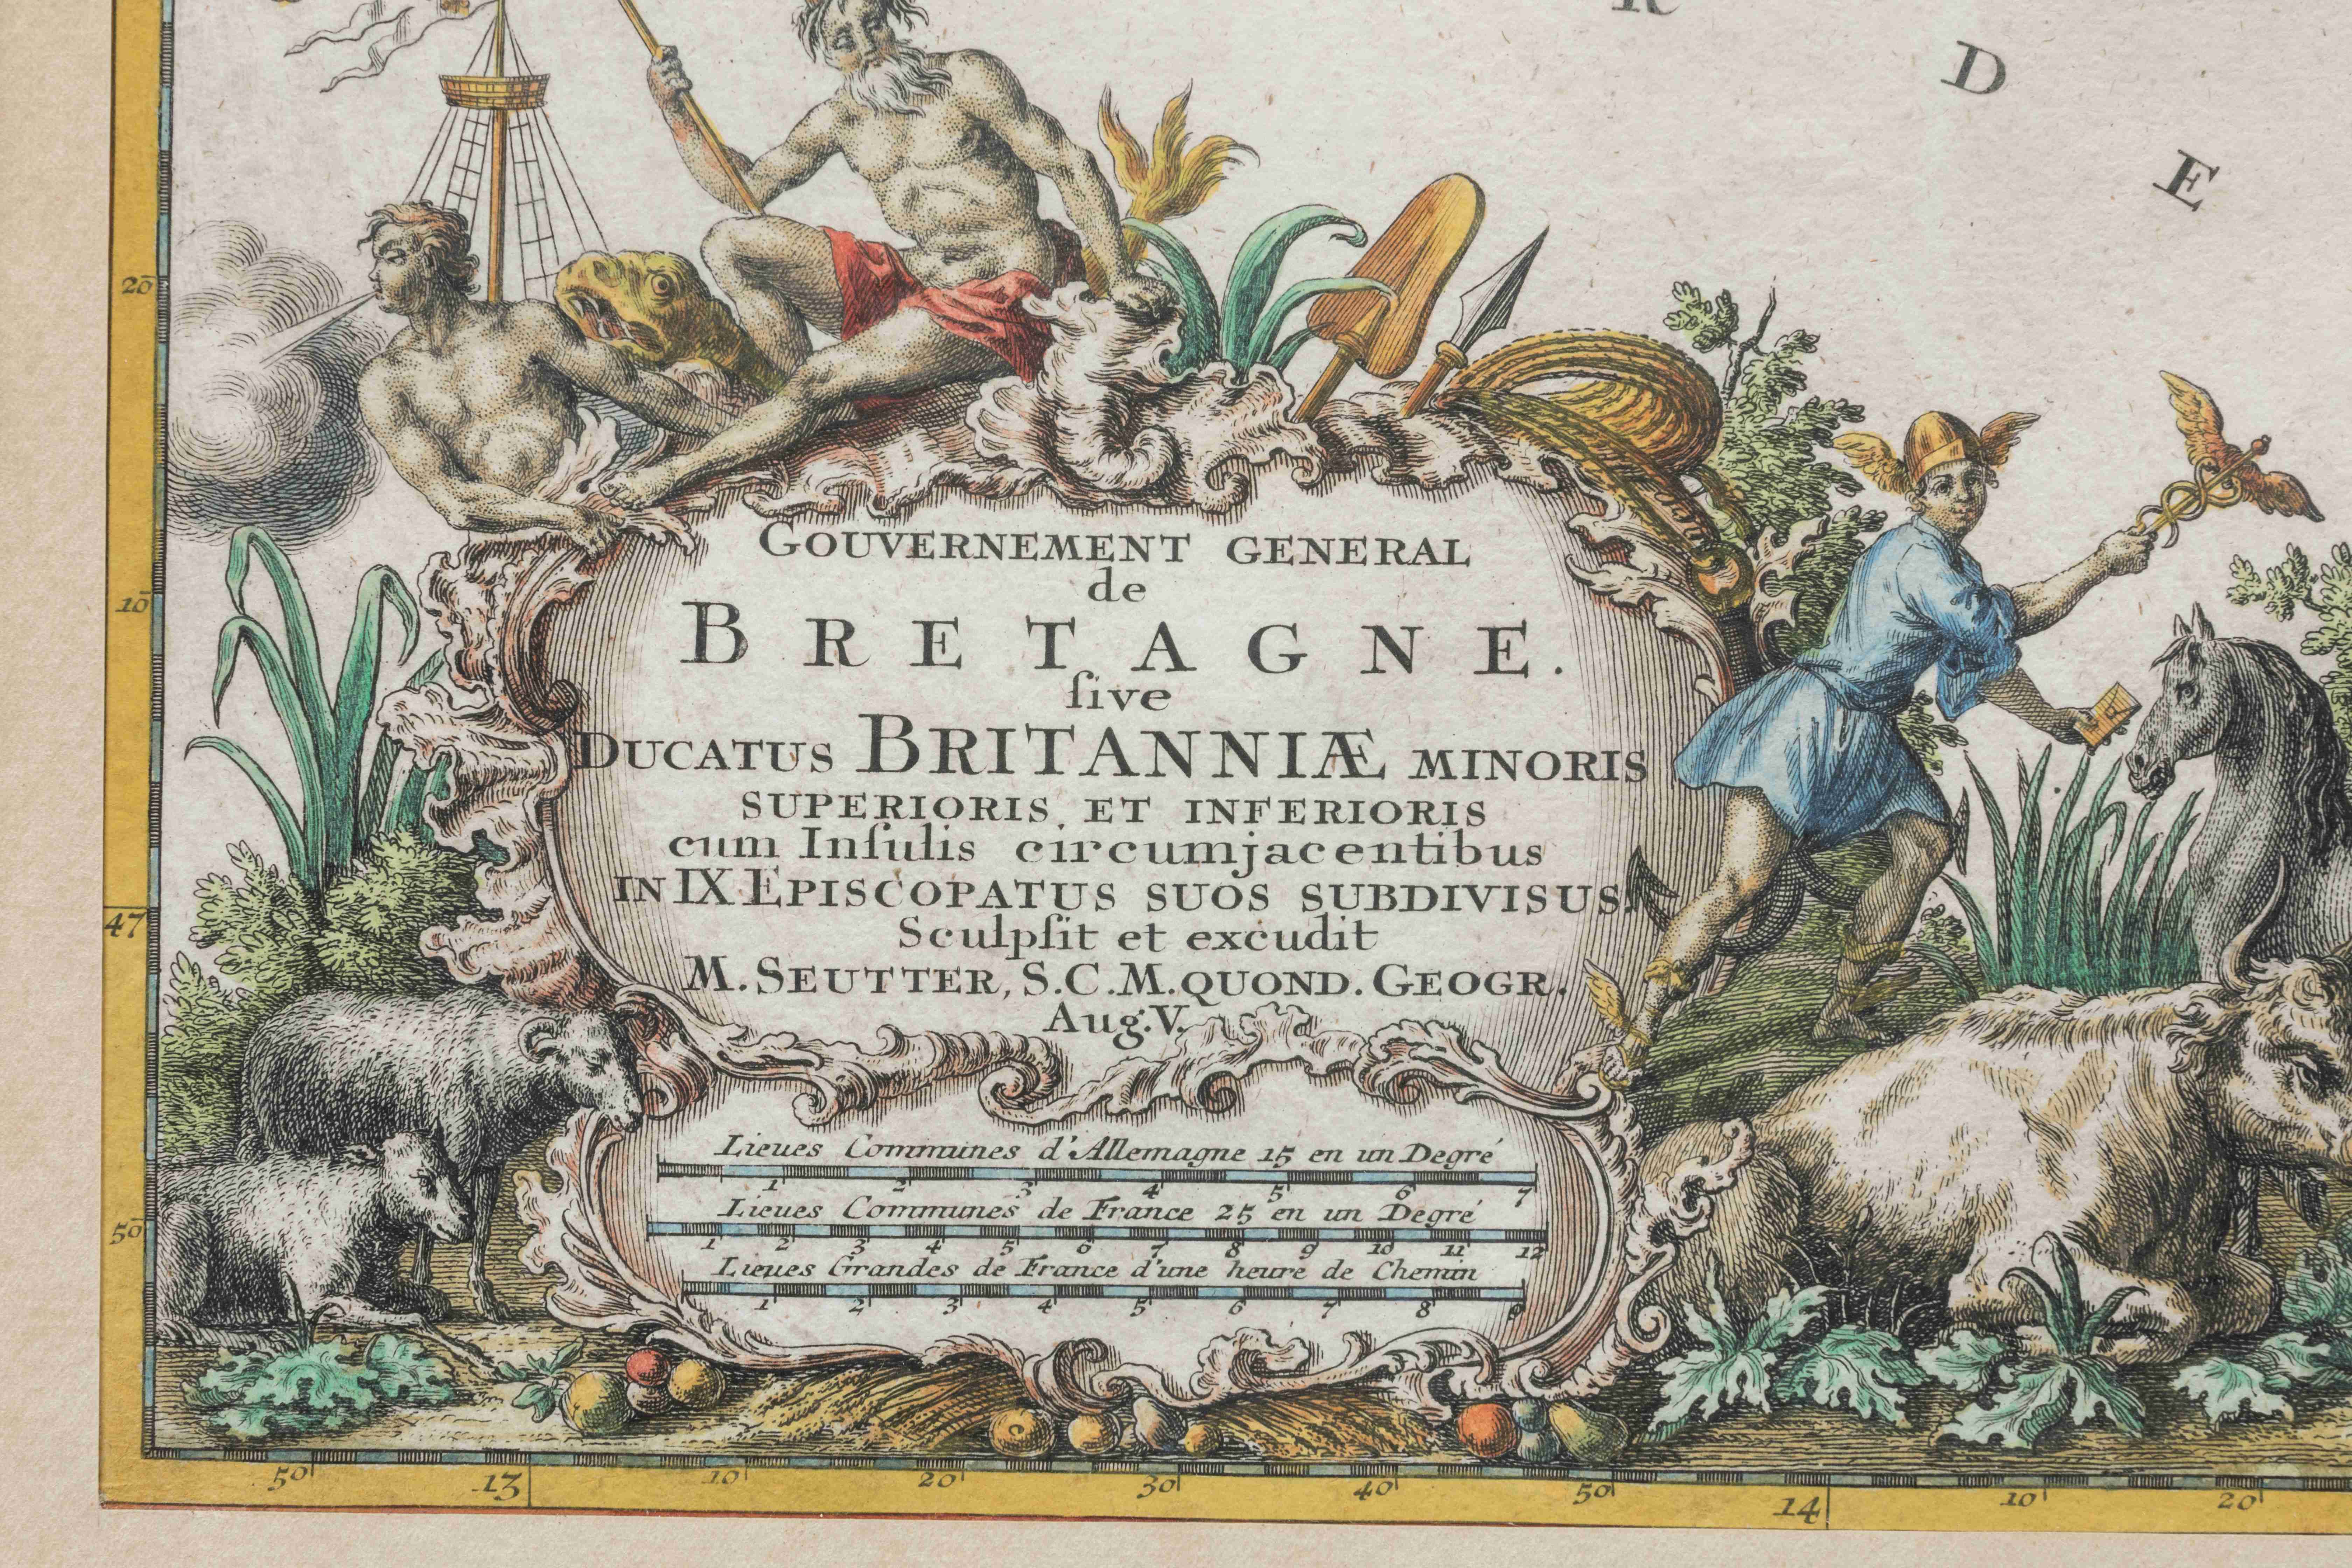 CARTE DE LA BRETAGNE par SEUTTER, "Gouvernement général de Bretagne...